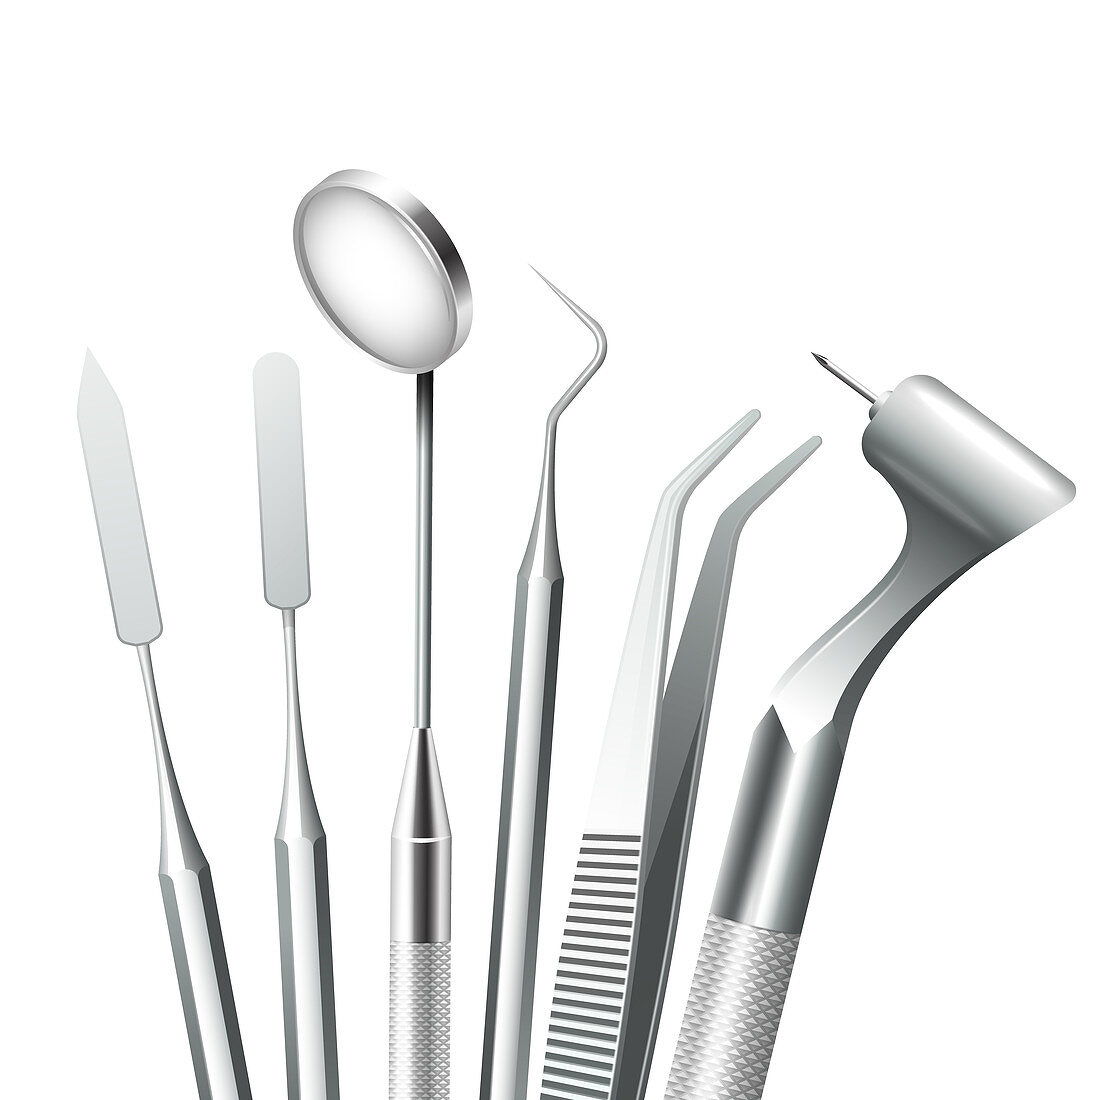 Dental tools, illustration